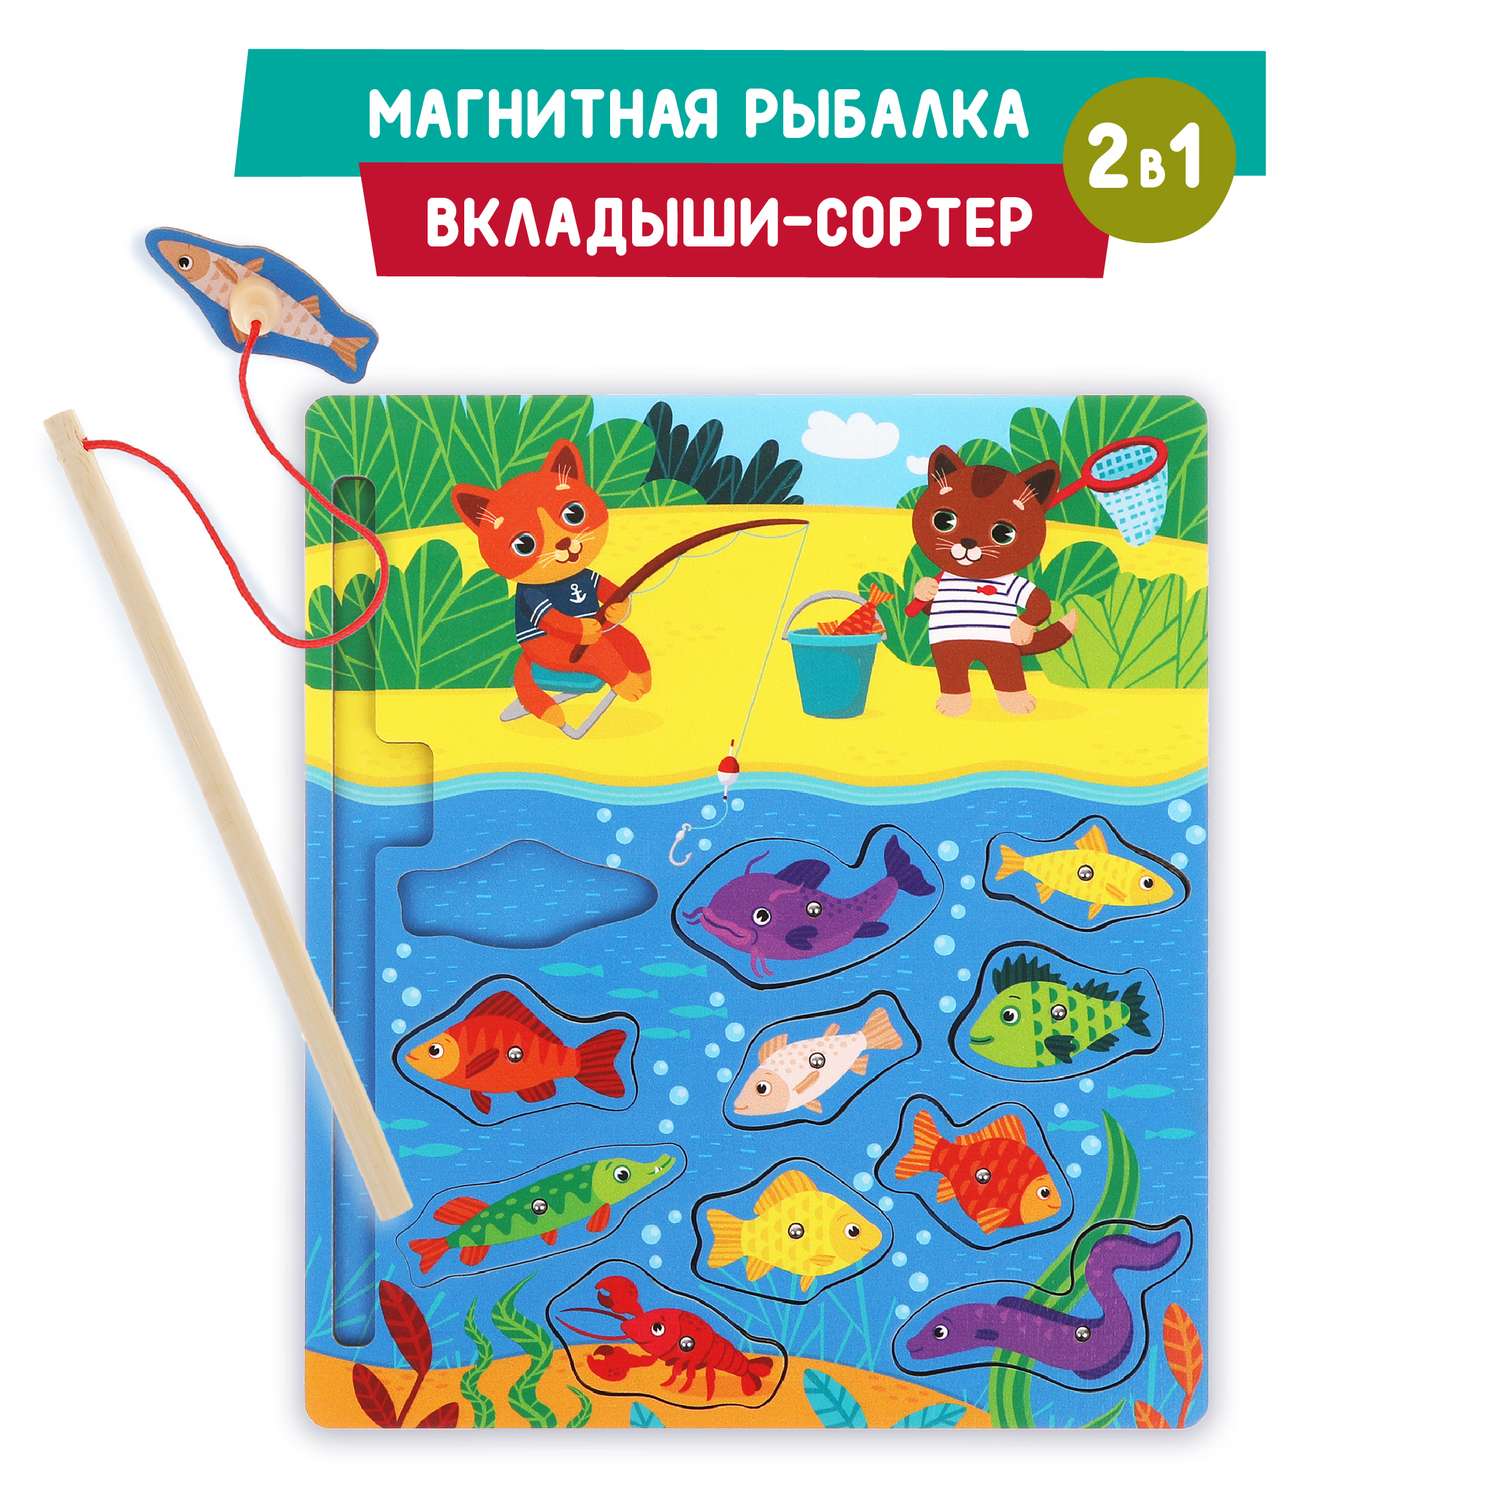 Развивающая игра Mapacha для детей деревянная рыбалка вкладыши Котики - фото 1